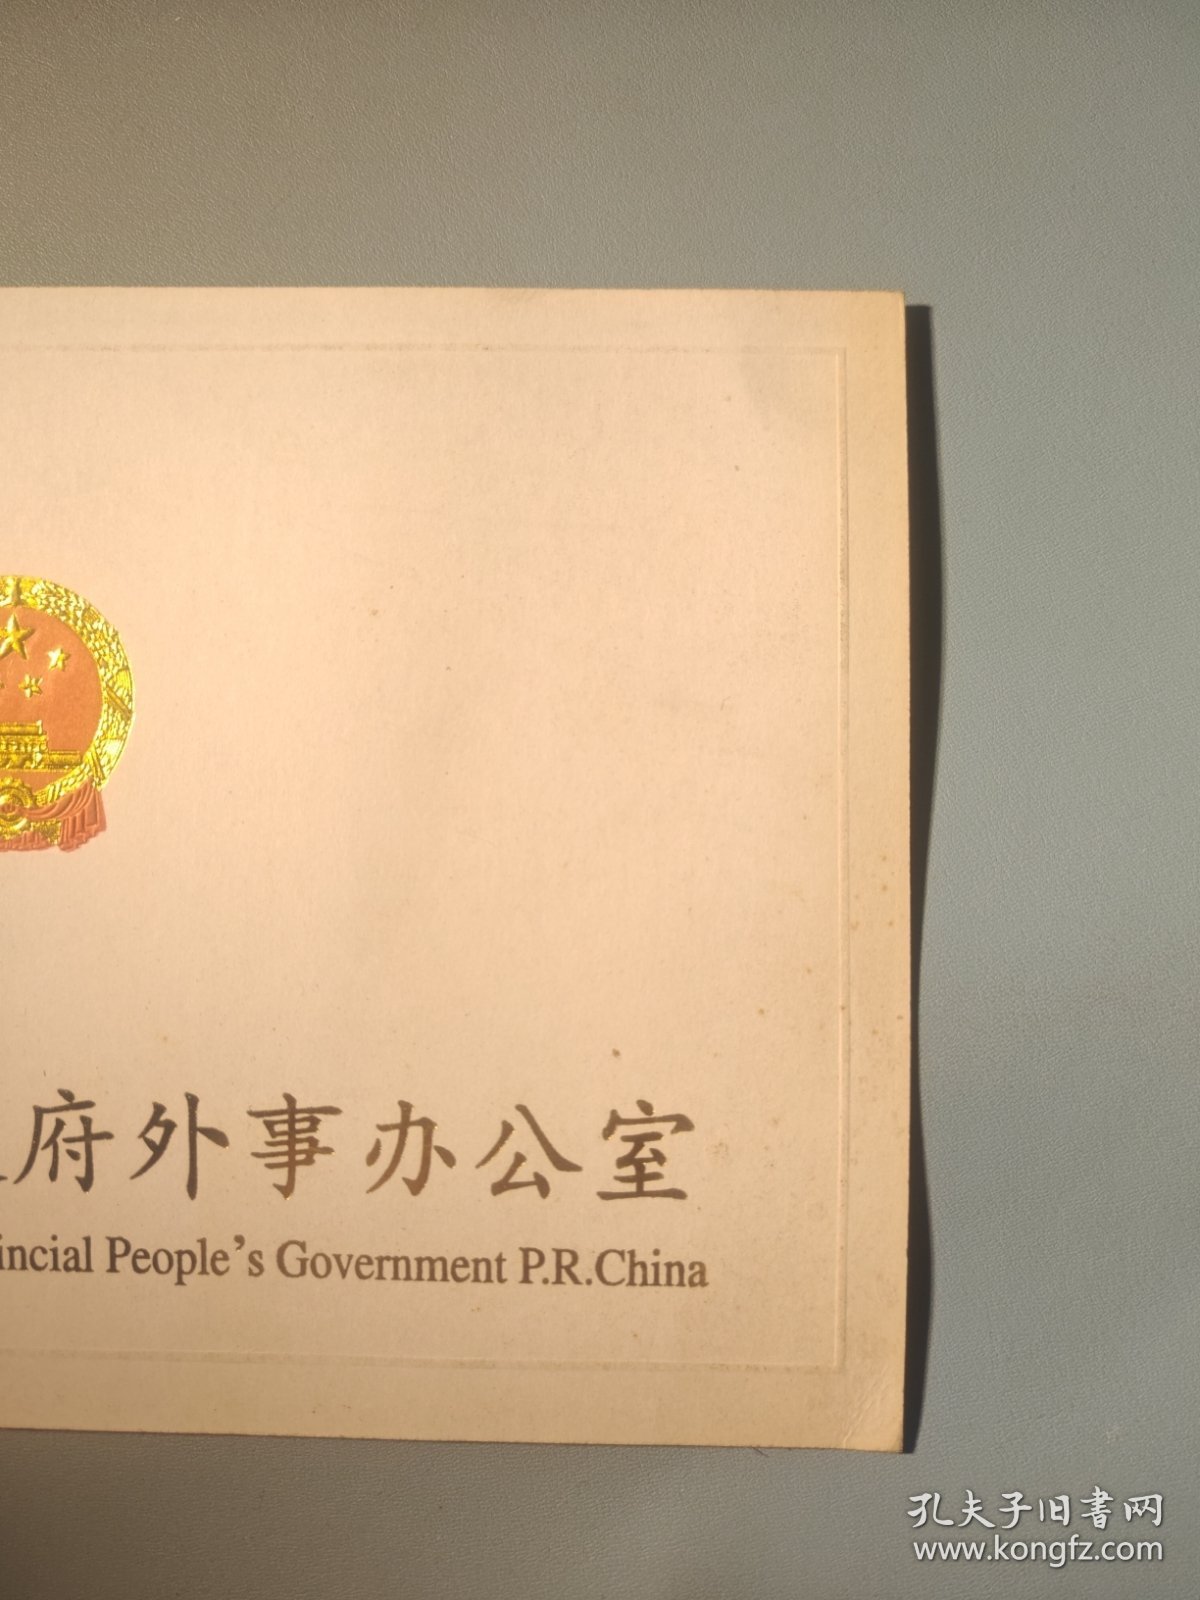 河北省人民政府外事办公室新年贺卡（带签名）